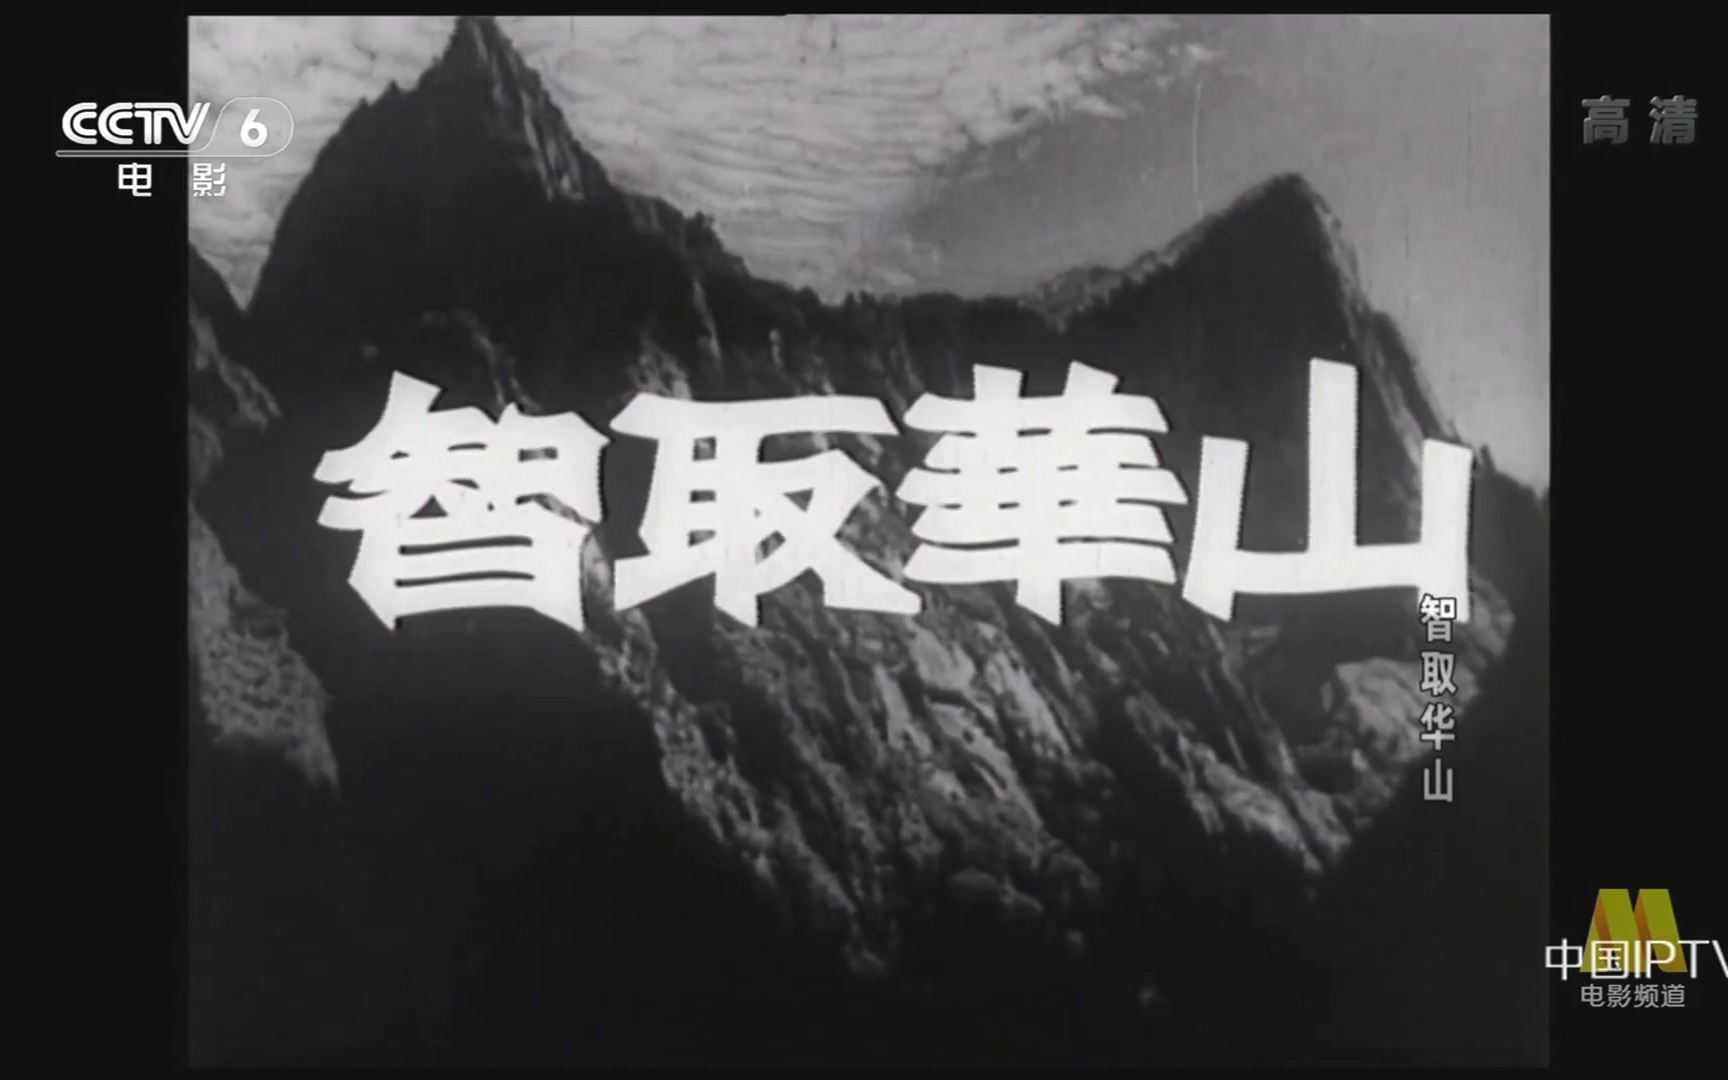 【剧情/战争】智取华山 (1953)【CCTV6高清】【1080P】